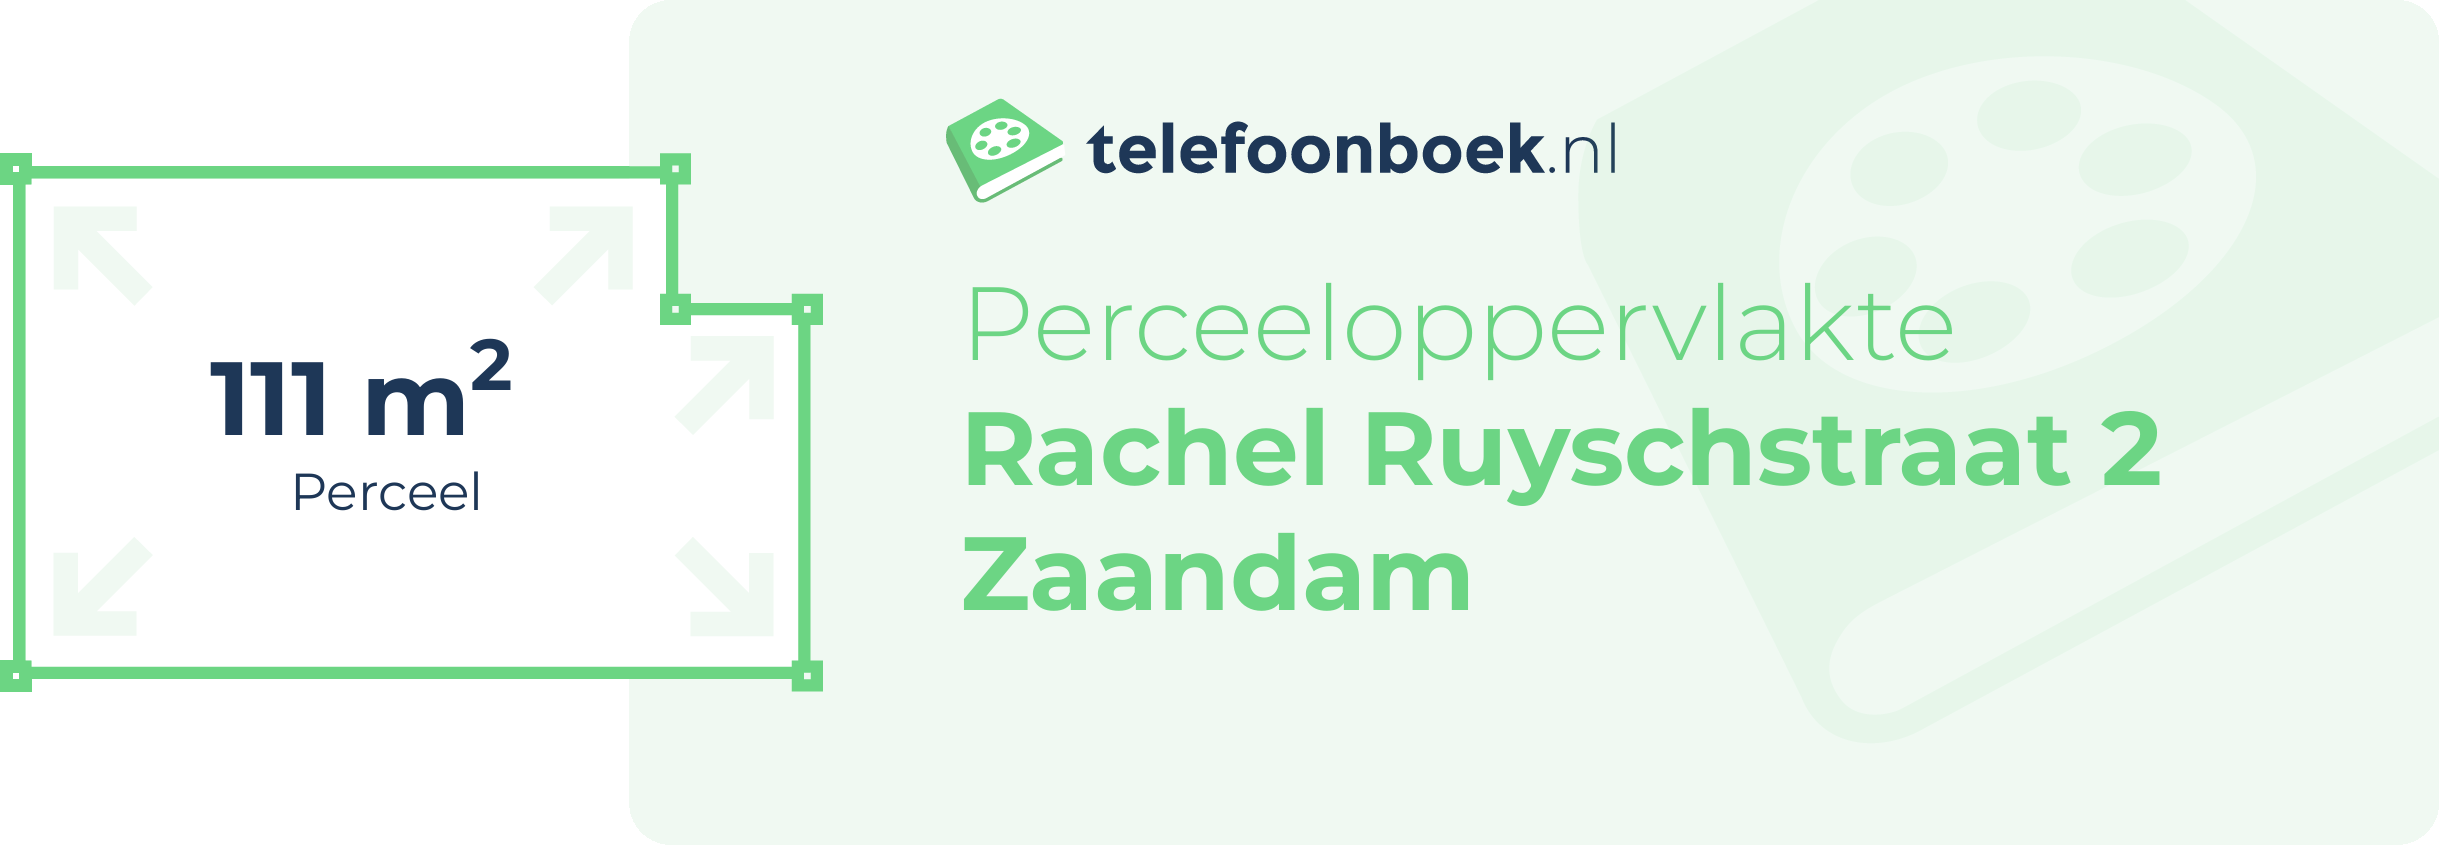 Perceeloppervlakte Rachel Ruyschstraat 2 Zaandam